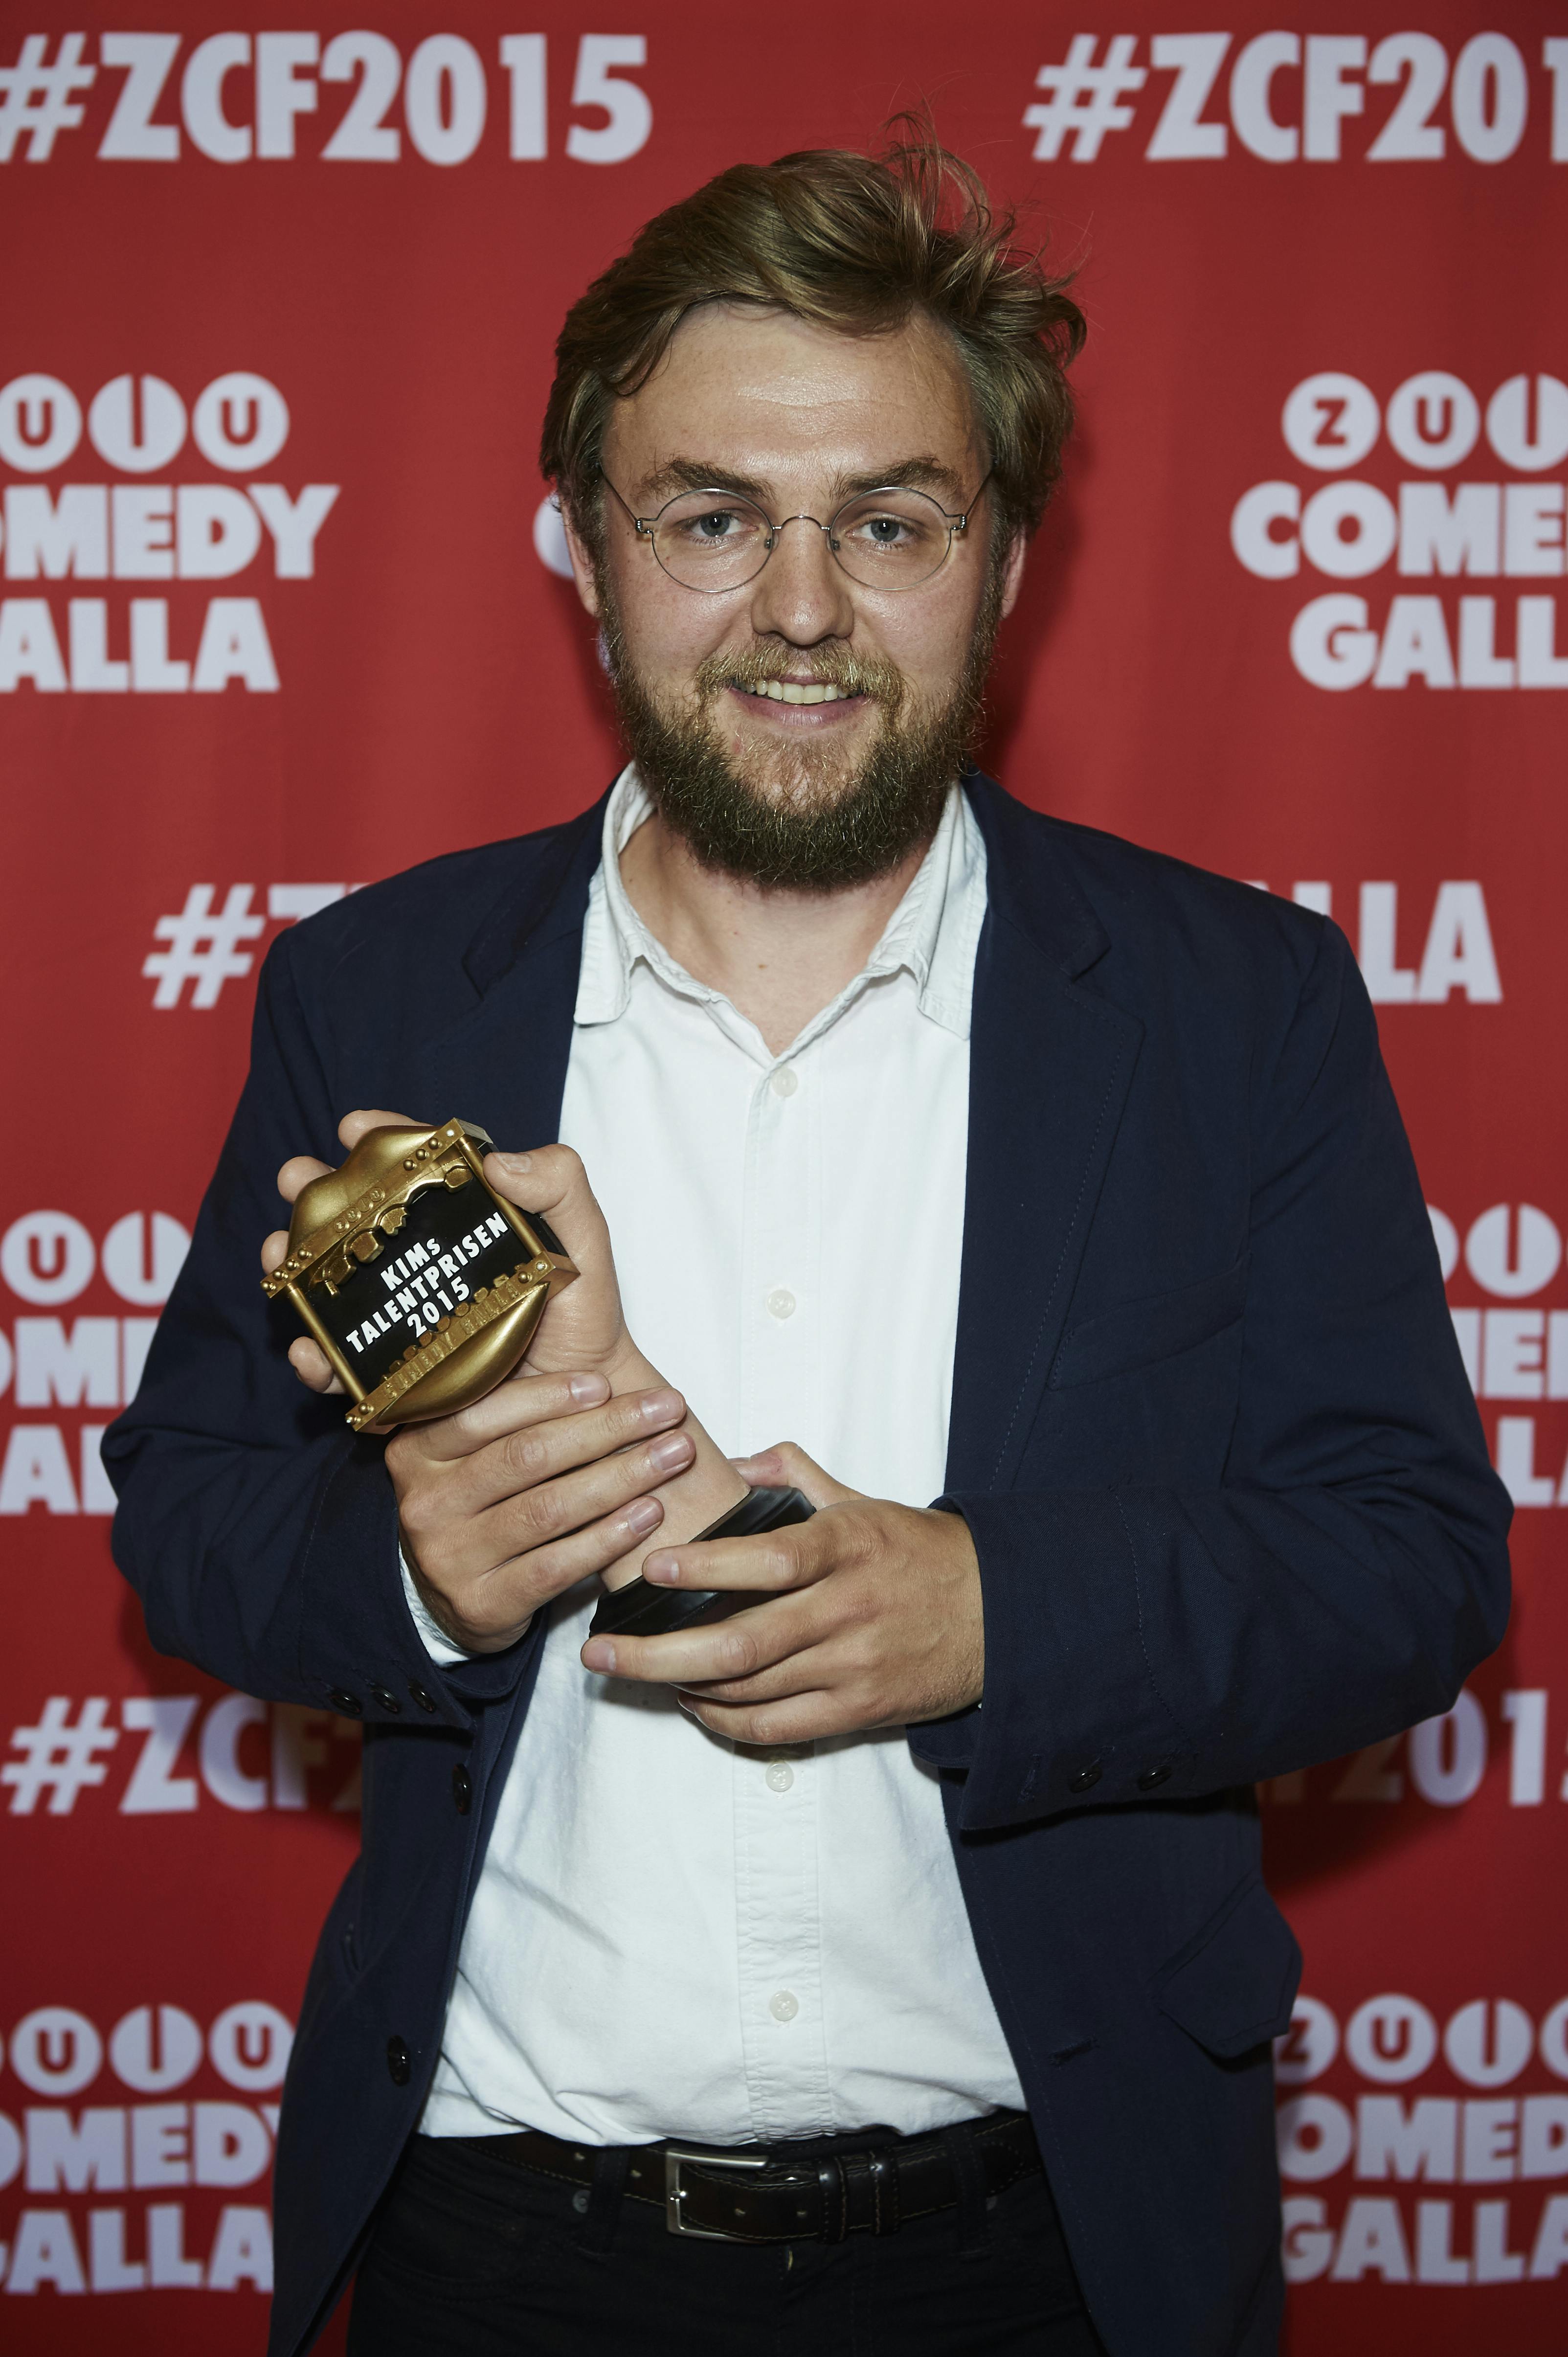 "Zulu Comedy Galla 2015" i Operaen i København. 